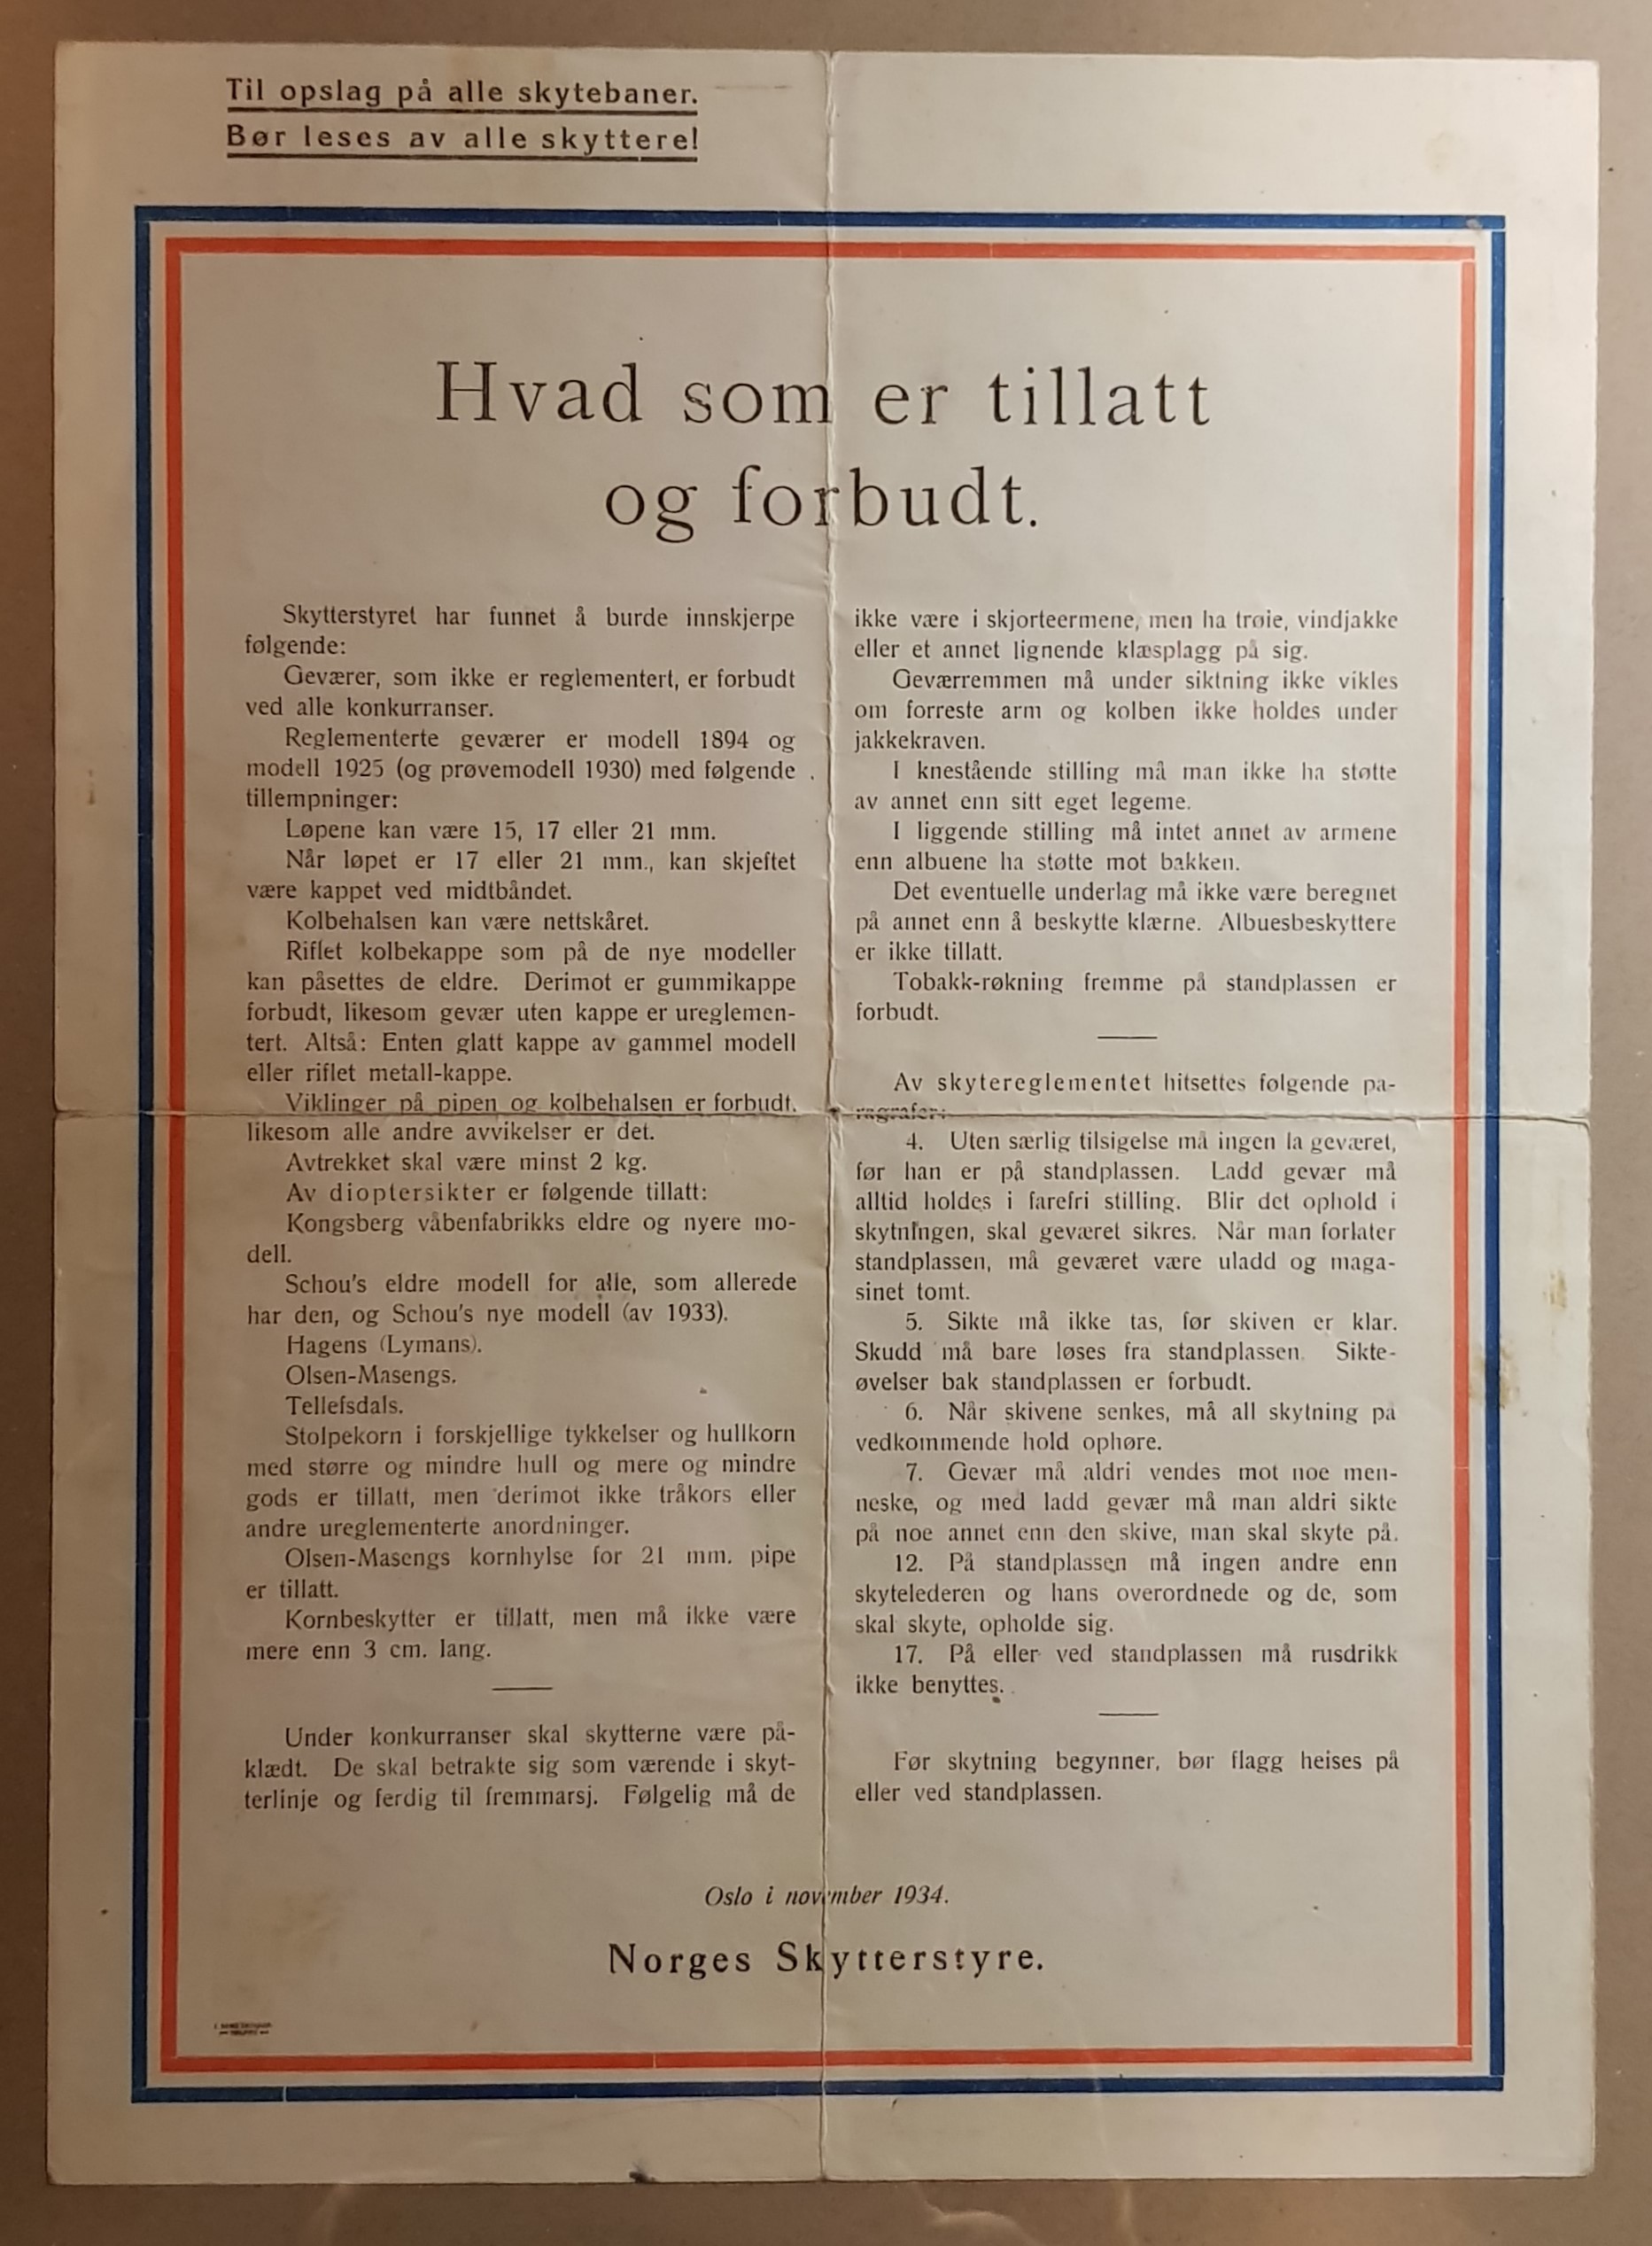 ./doc/diverse/Oppslag-Norsk-Skytterstyre-nov-1934-1.jpg